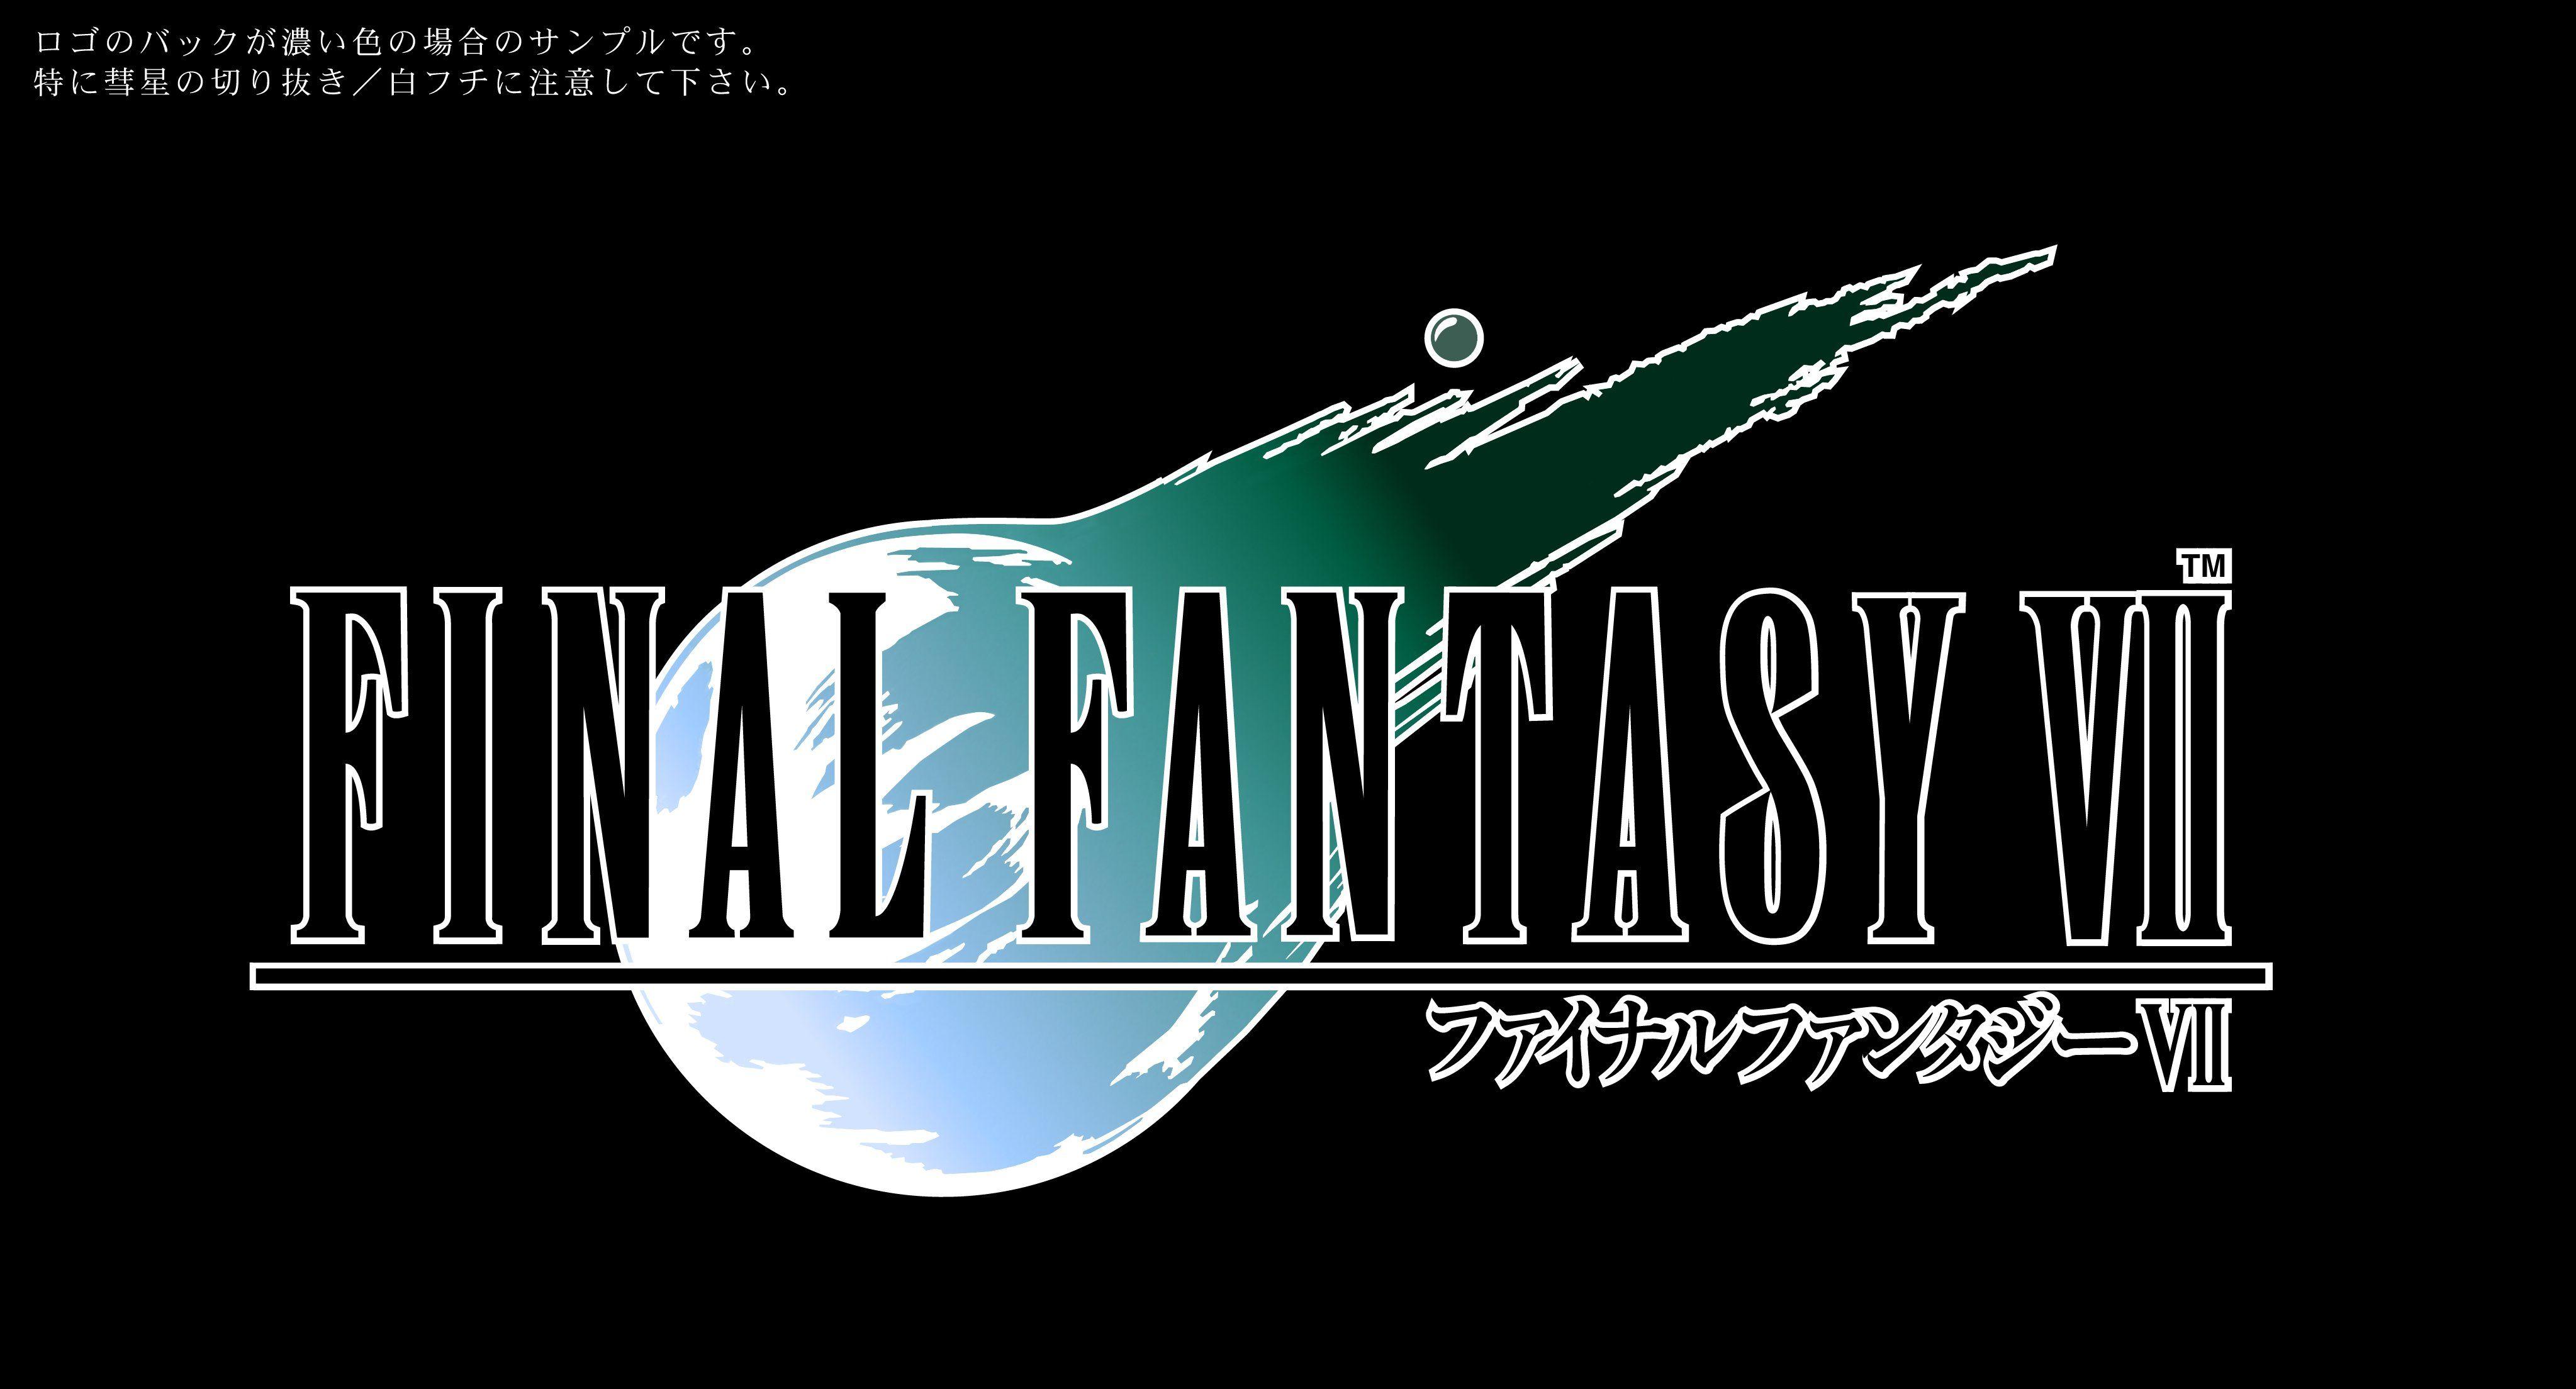 VII Logo - Final Fantasy VII (1997) promotional art